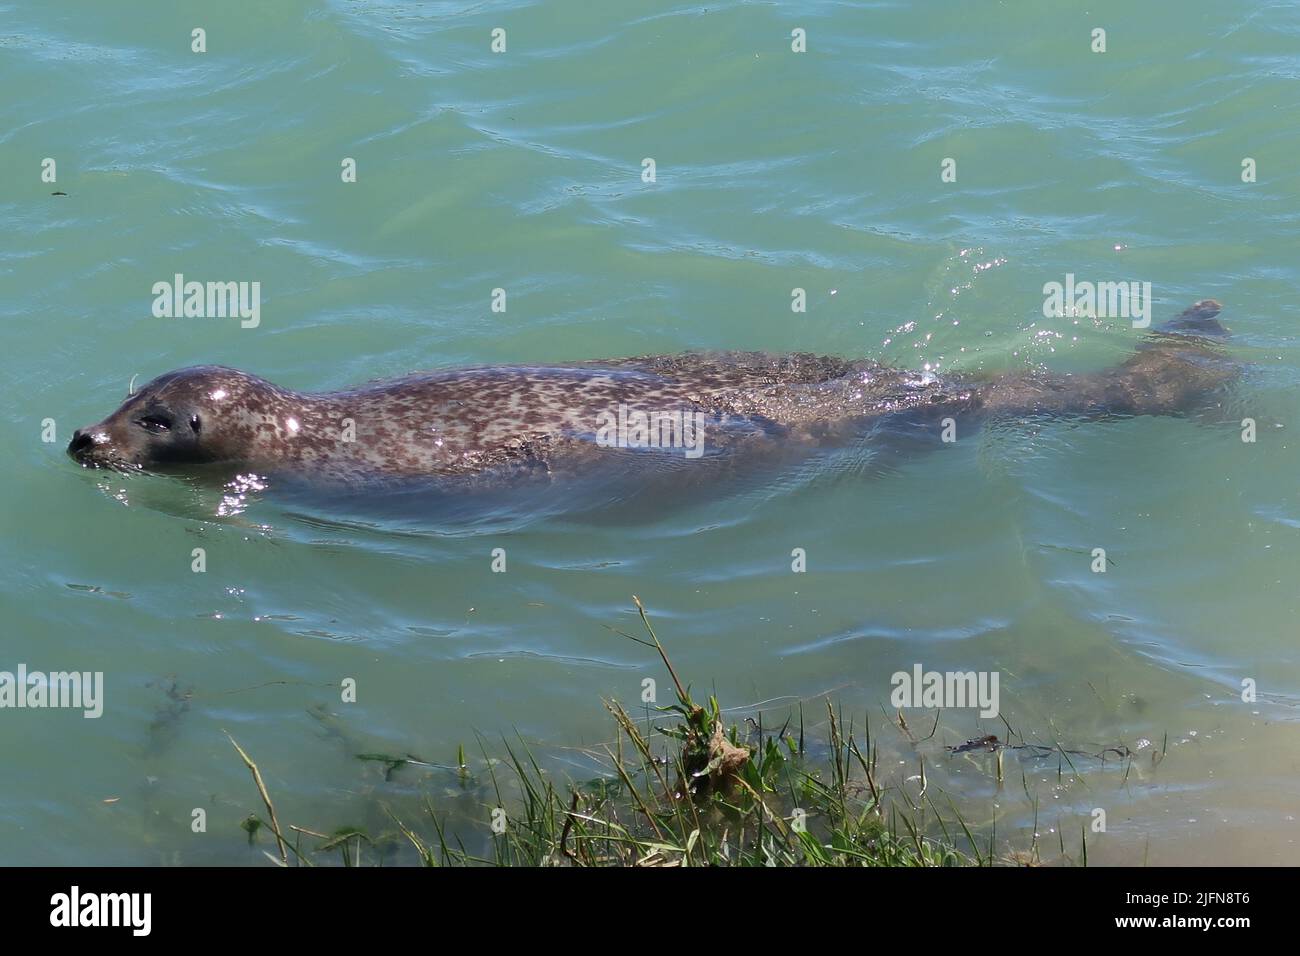 Una grande foca grigia nuota nel fiume Arun, West Sussex, Regno Unito. Posizione inusuale a 3 miglia all'interno dal mare, ma ben noto localmente per diversi anni. Foto Stock